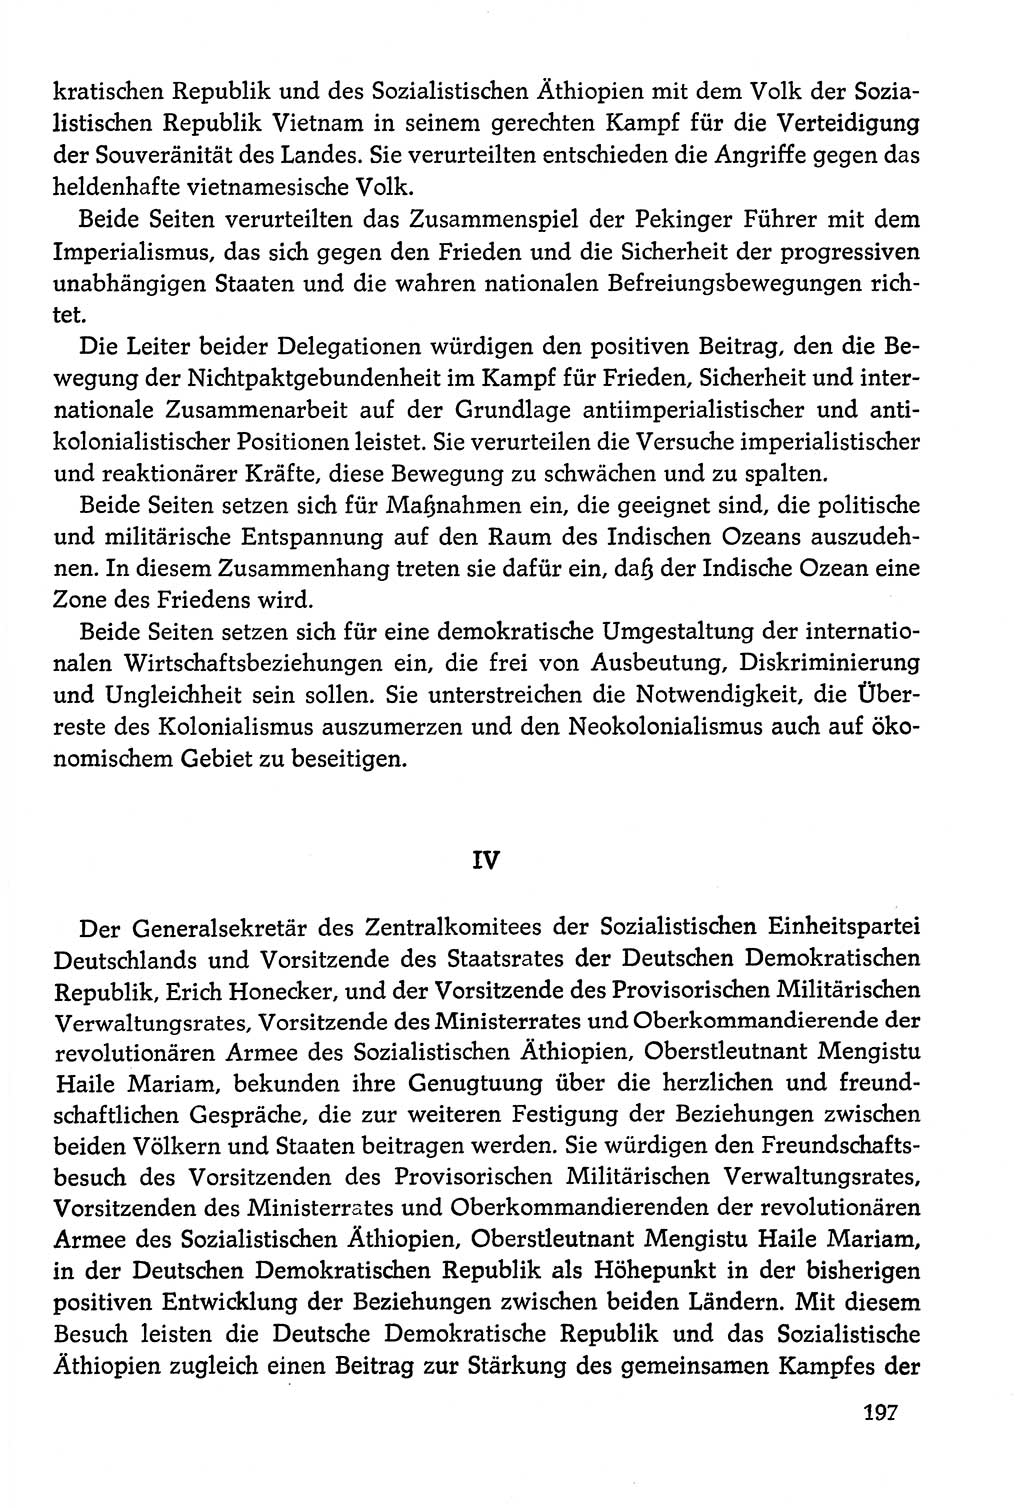 Dokumente der Sozialistischen Einheitspartei Deutschlands (SED) [Deutsche Demokratische Republik (DDR)] 1978-1979, Seite 197 (Dok. SED DDR 1978-1979, S. 197)